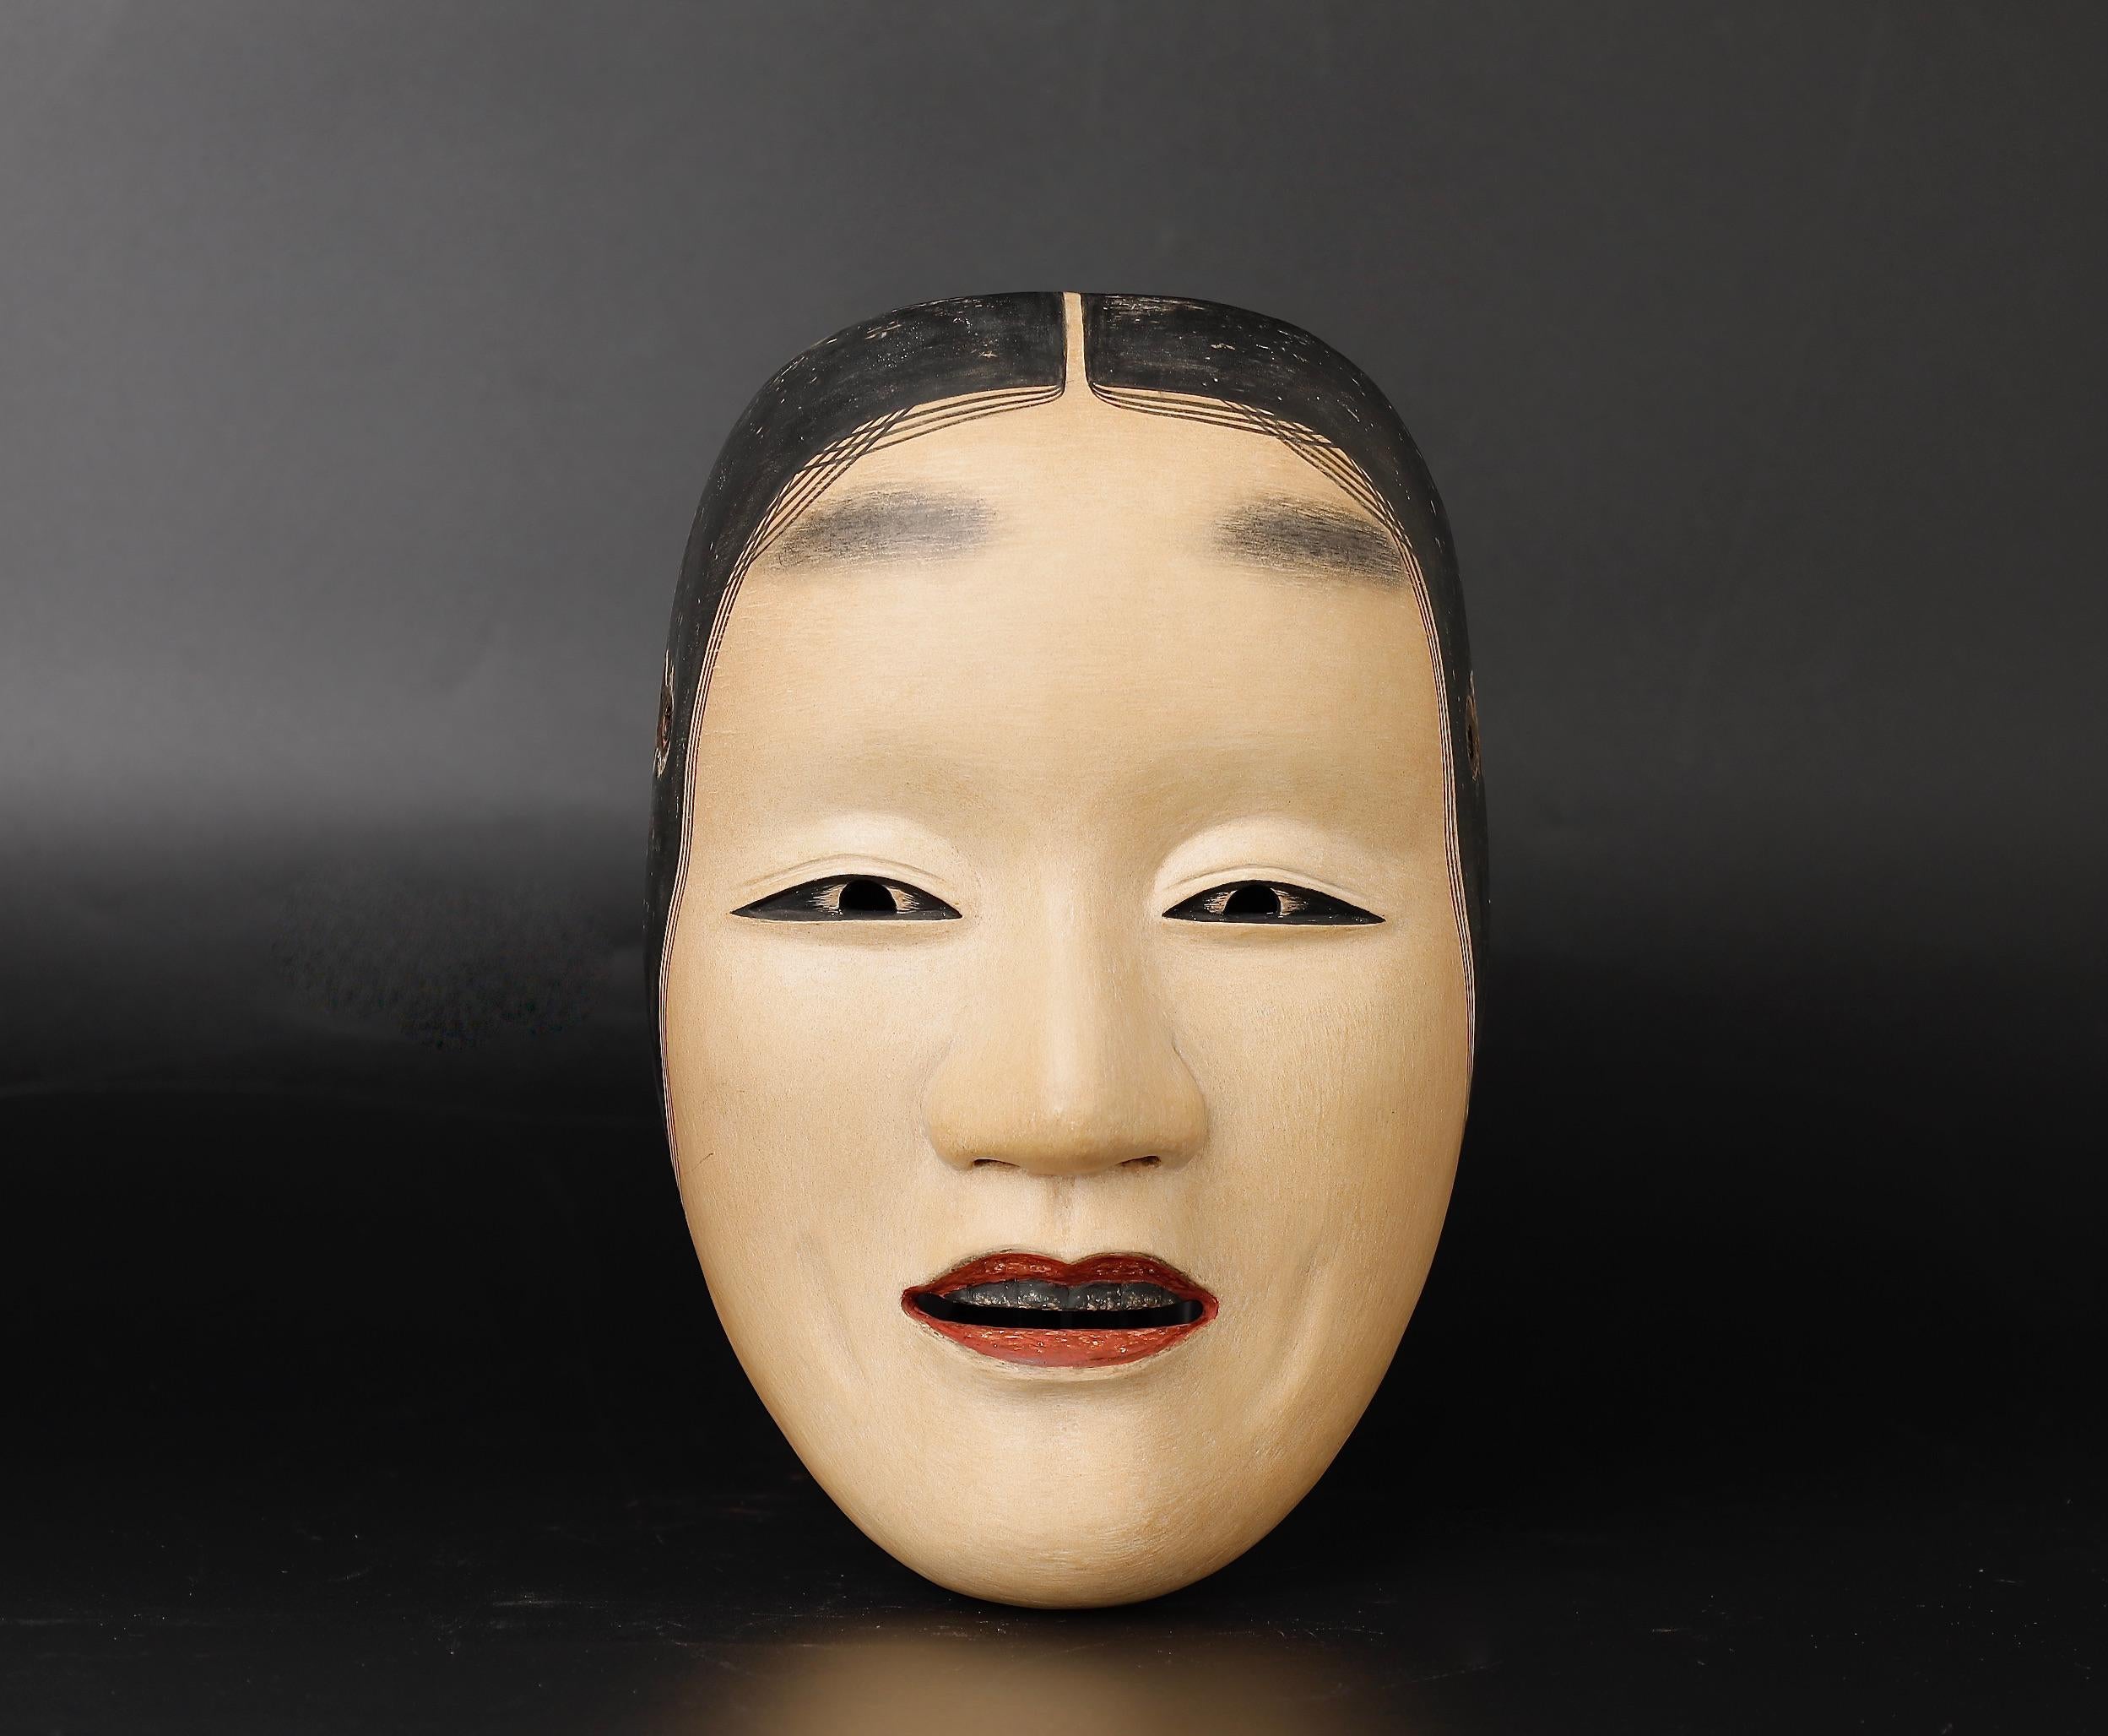 Eine seltene und exquisite japanische Fukai-Noh-Maske, die Sammler und Menschen mit einem anspruchsvollen Geschmack für Inneneinrichtungen begeistern wird. Diese besondere Maske ist eine beeindruckende Darstellung einer Frau mittleren Alters, die